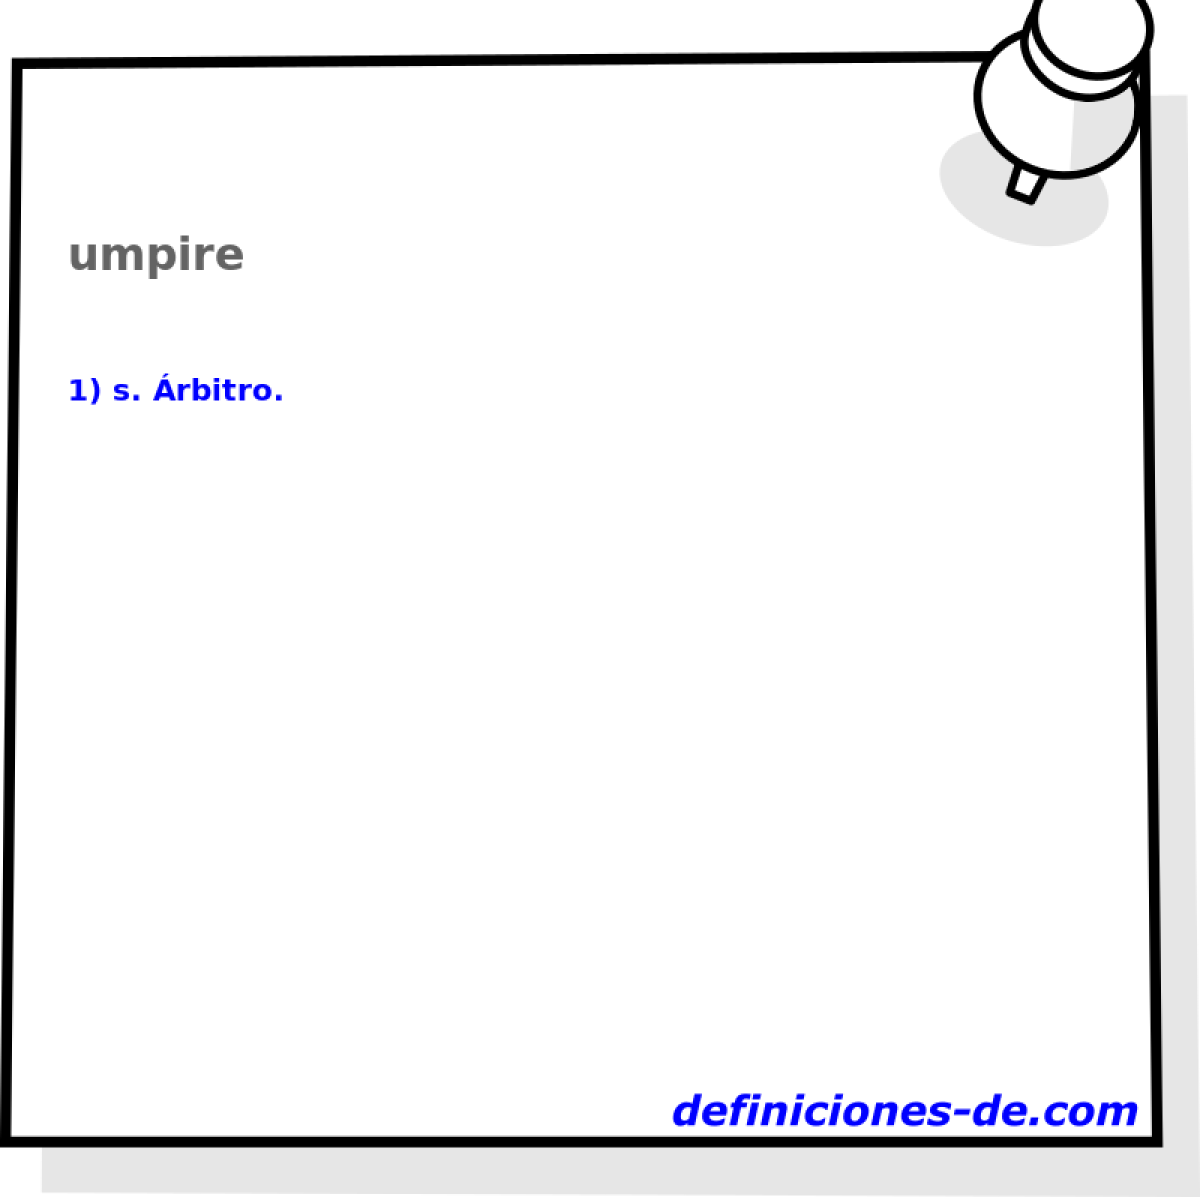 umpire 